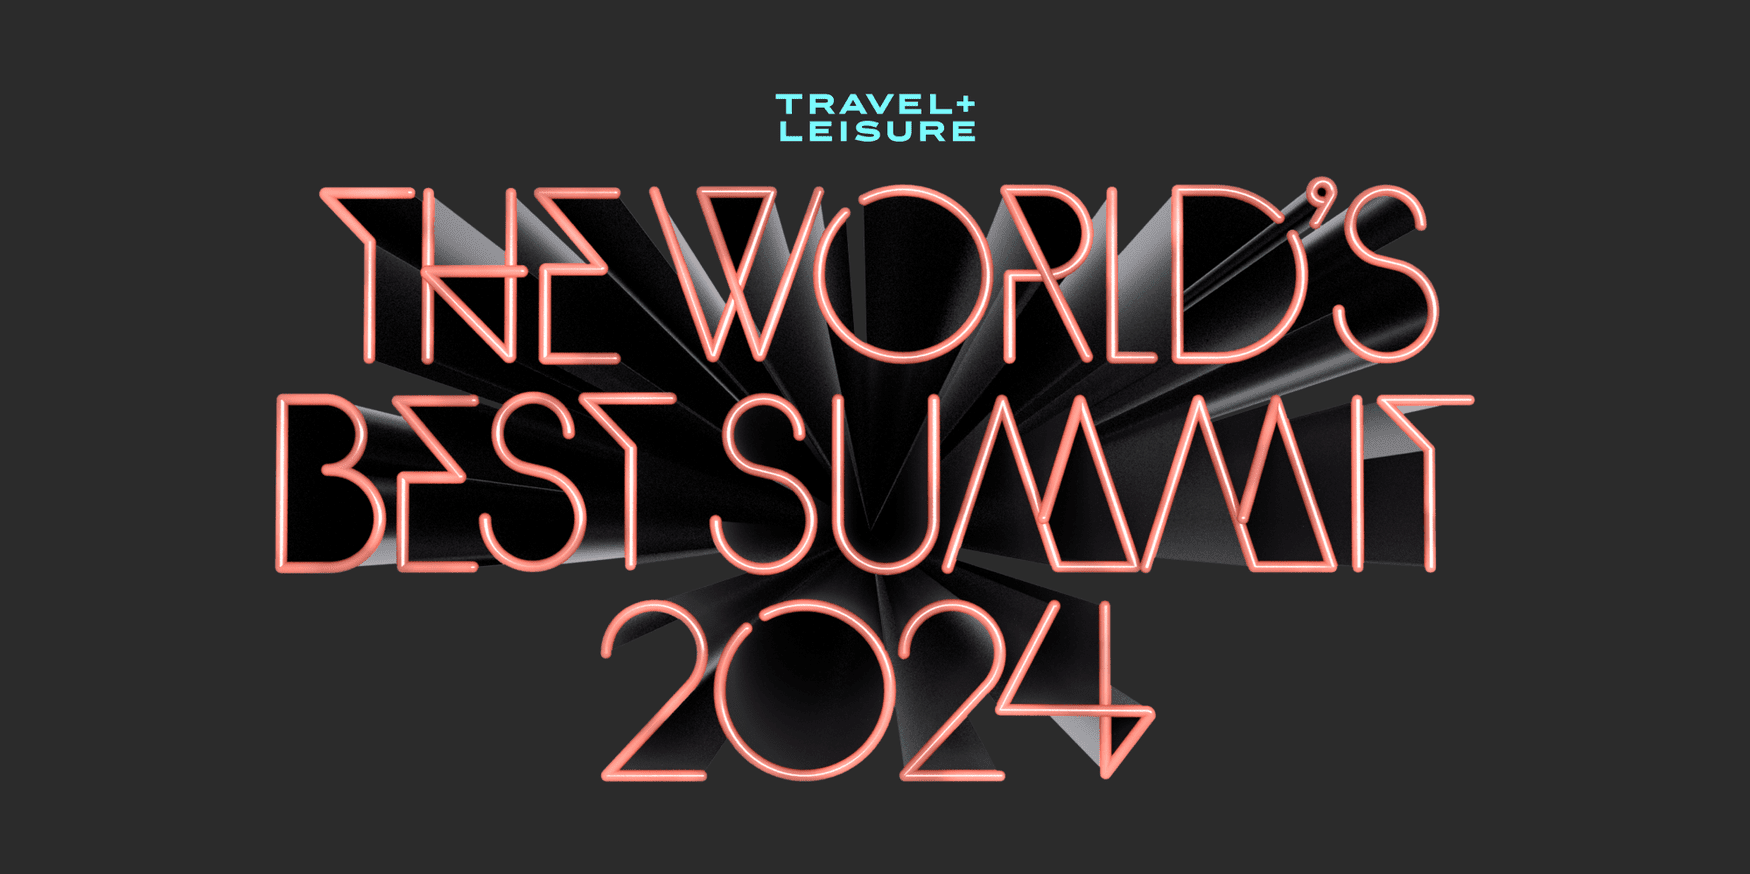 World's Best Summit 